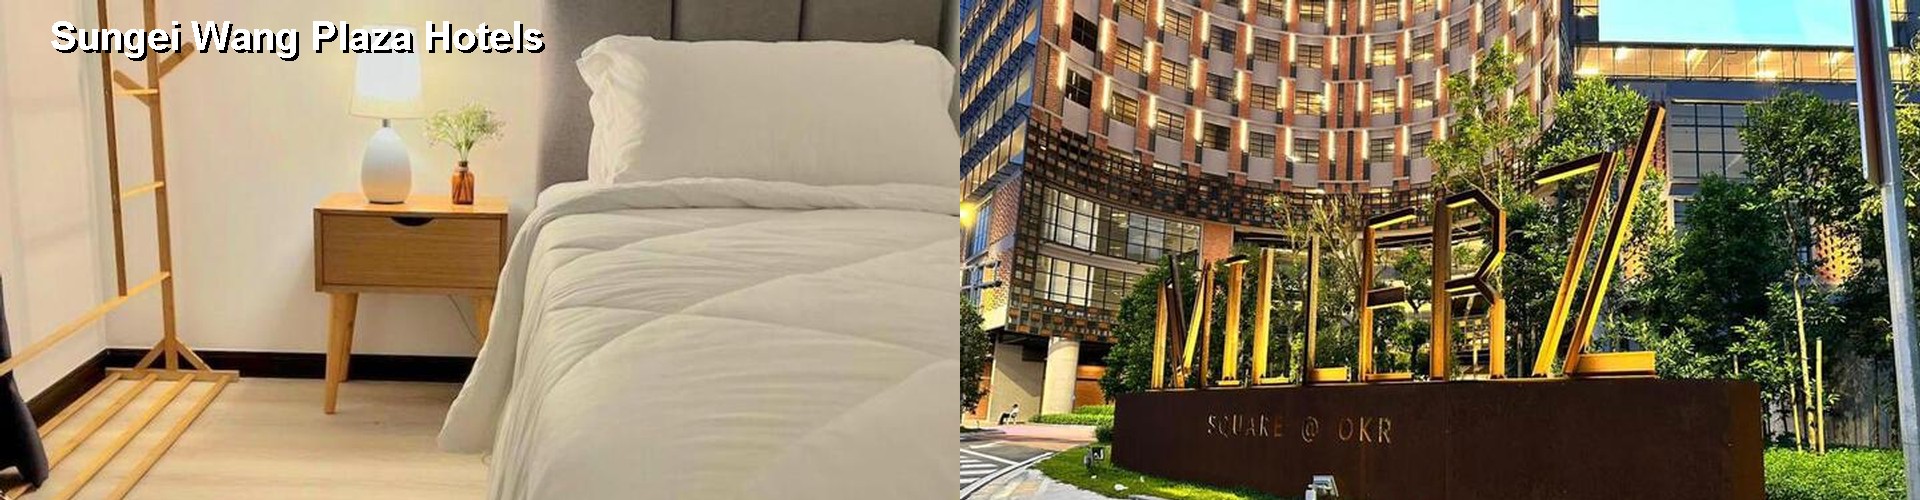 5 Best Hotels near Sungei Wang Plaza